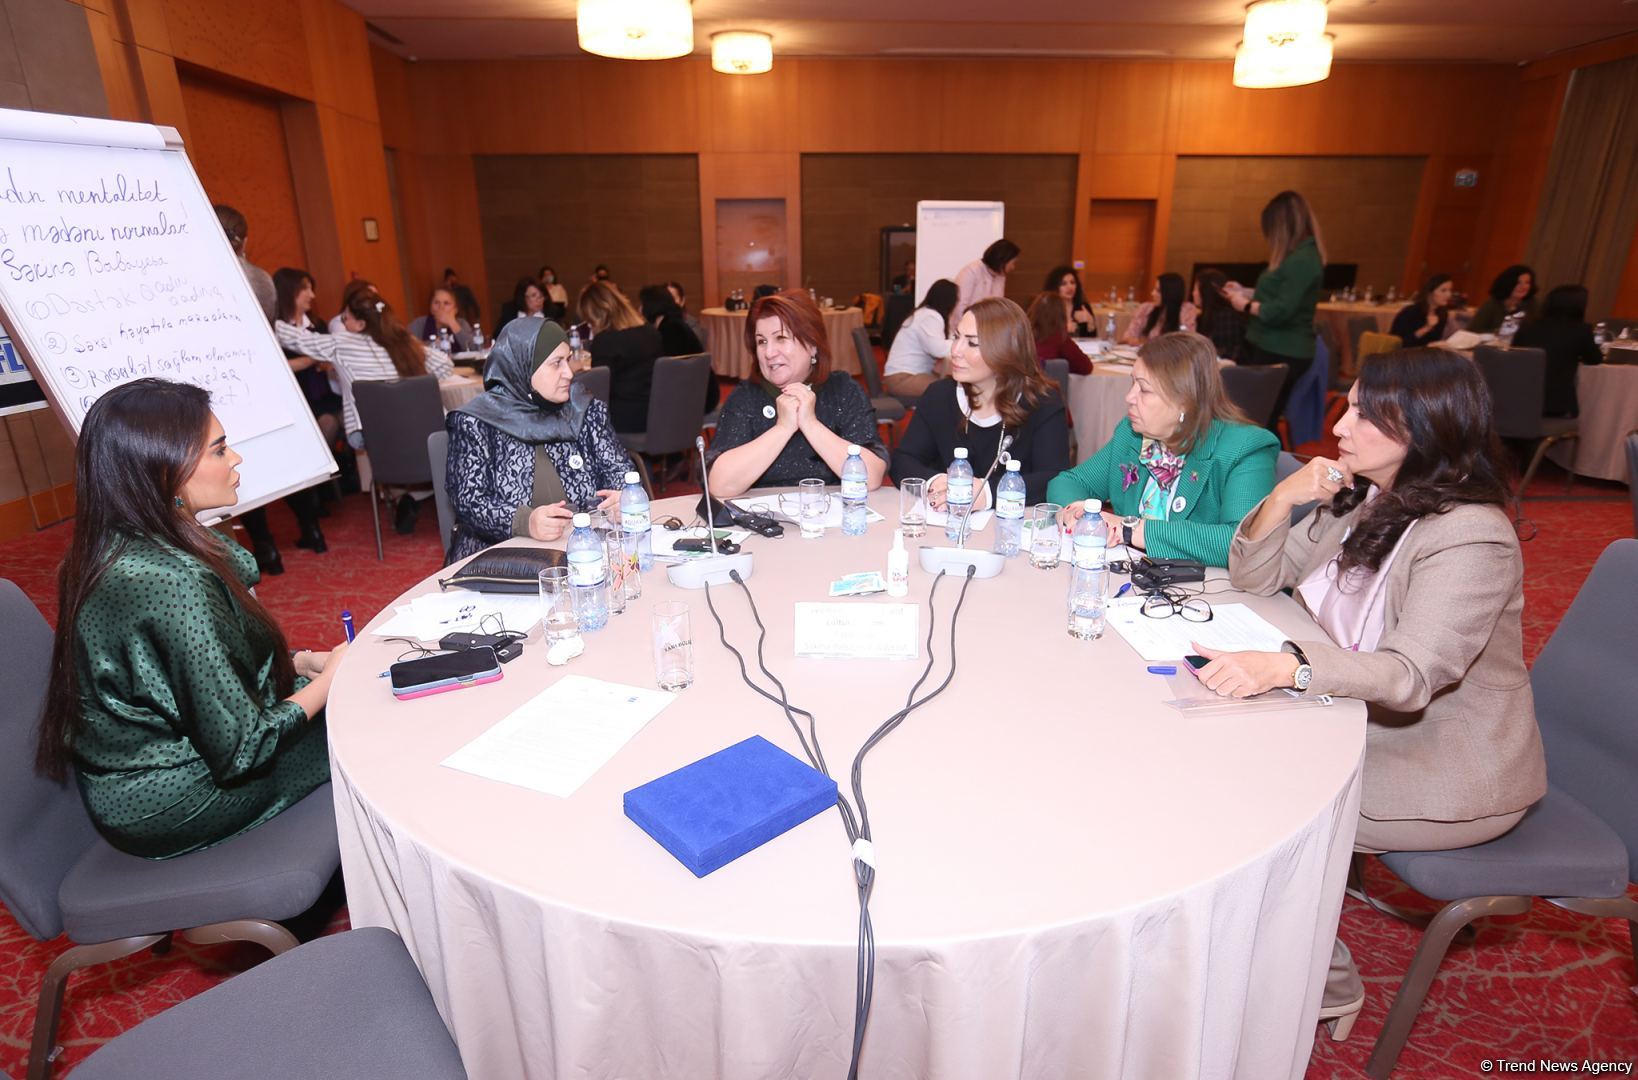 Сельские женщины могут развивать свой бизнес по-новому - Женская национальная бизнес-повестка (ФОТО)